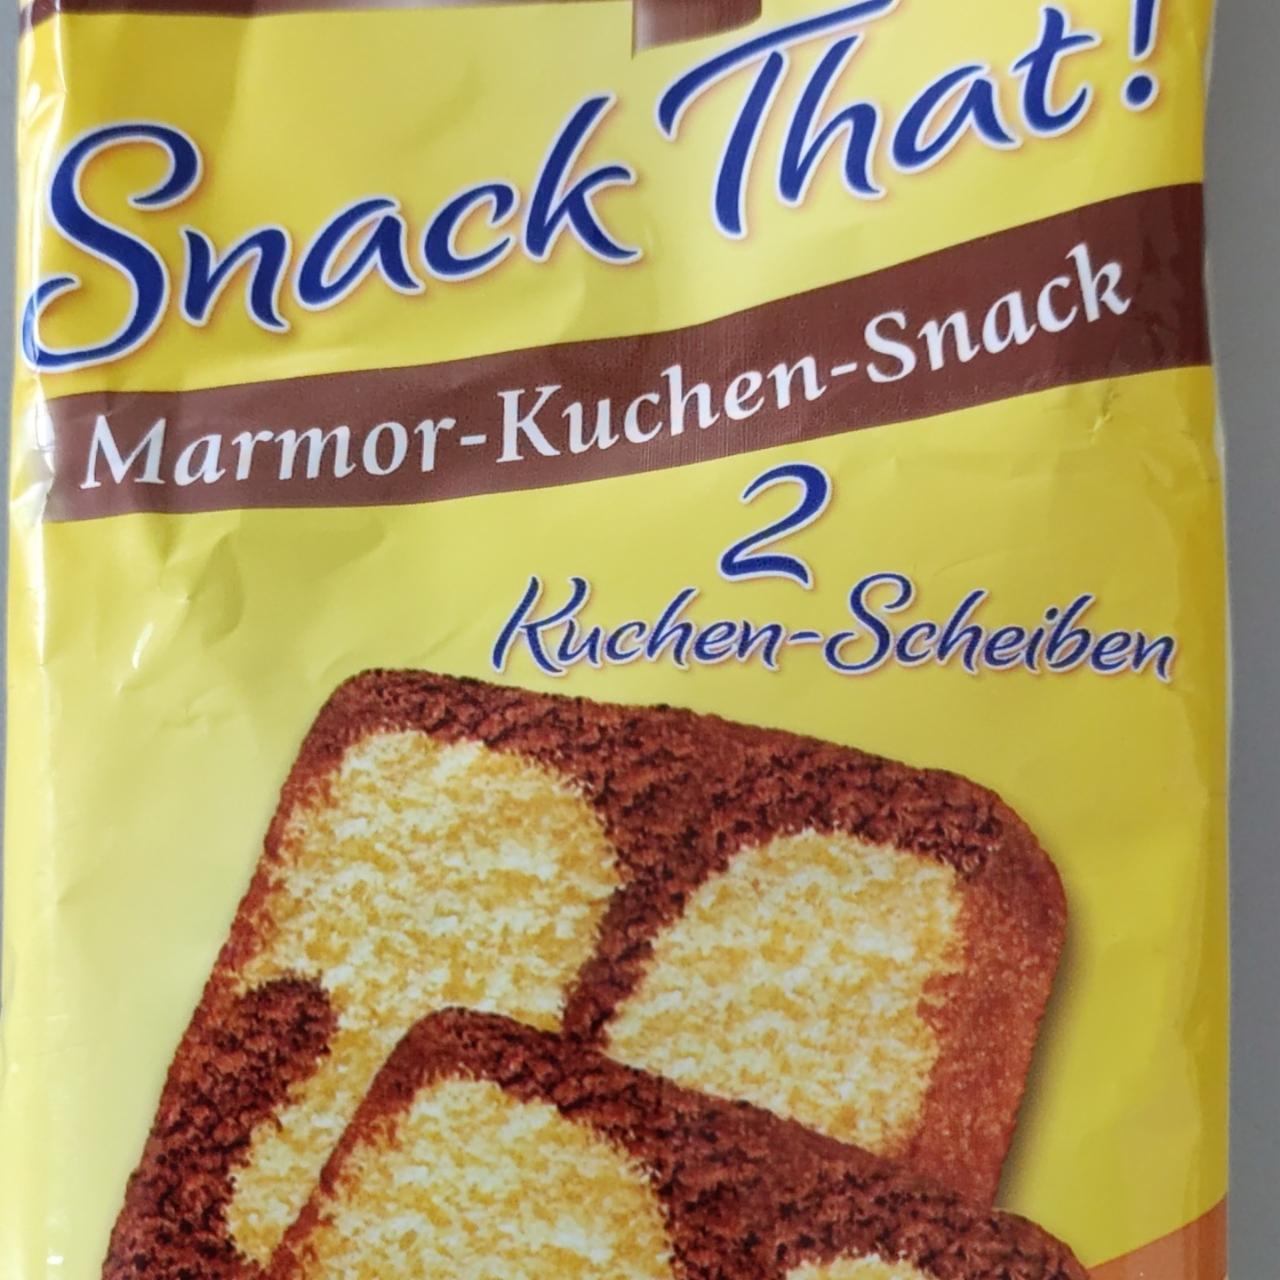 Fotografie - Snack That! -Marmor-Kuchen-Snack Kuchenmeister